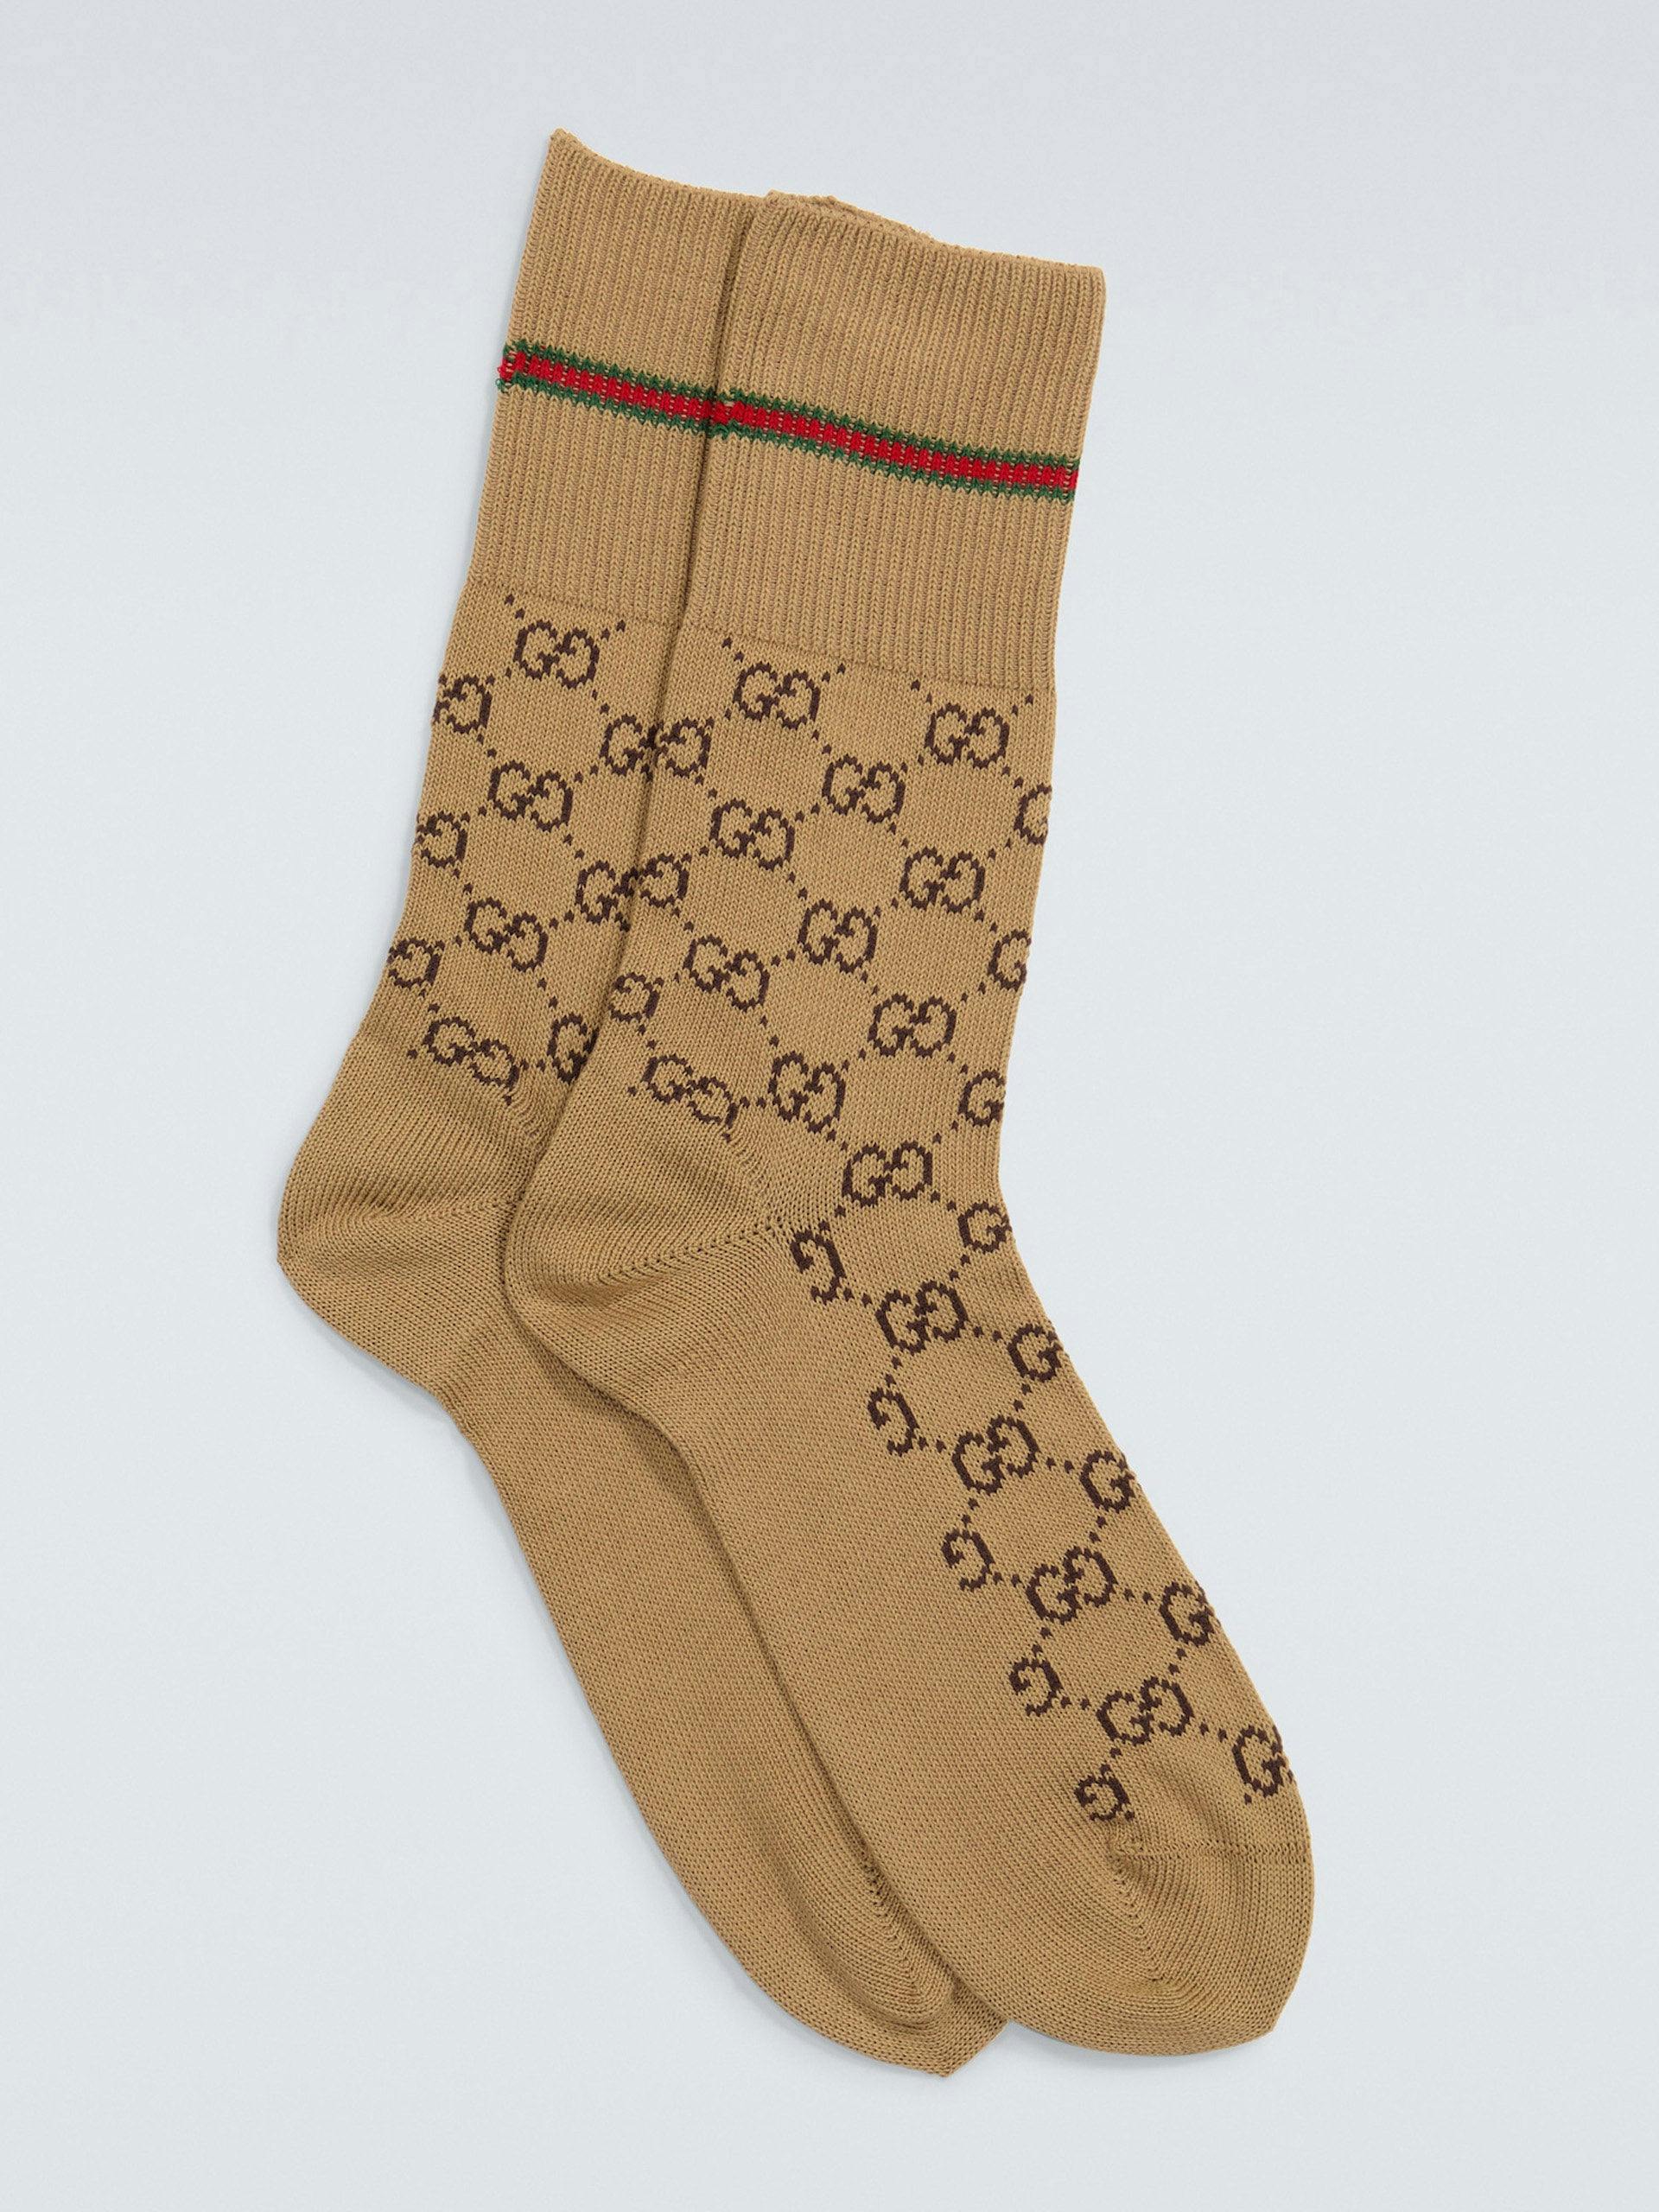 GG logo socks